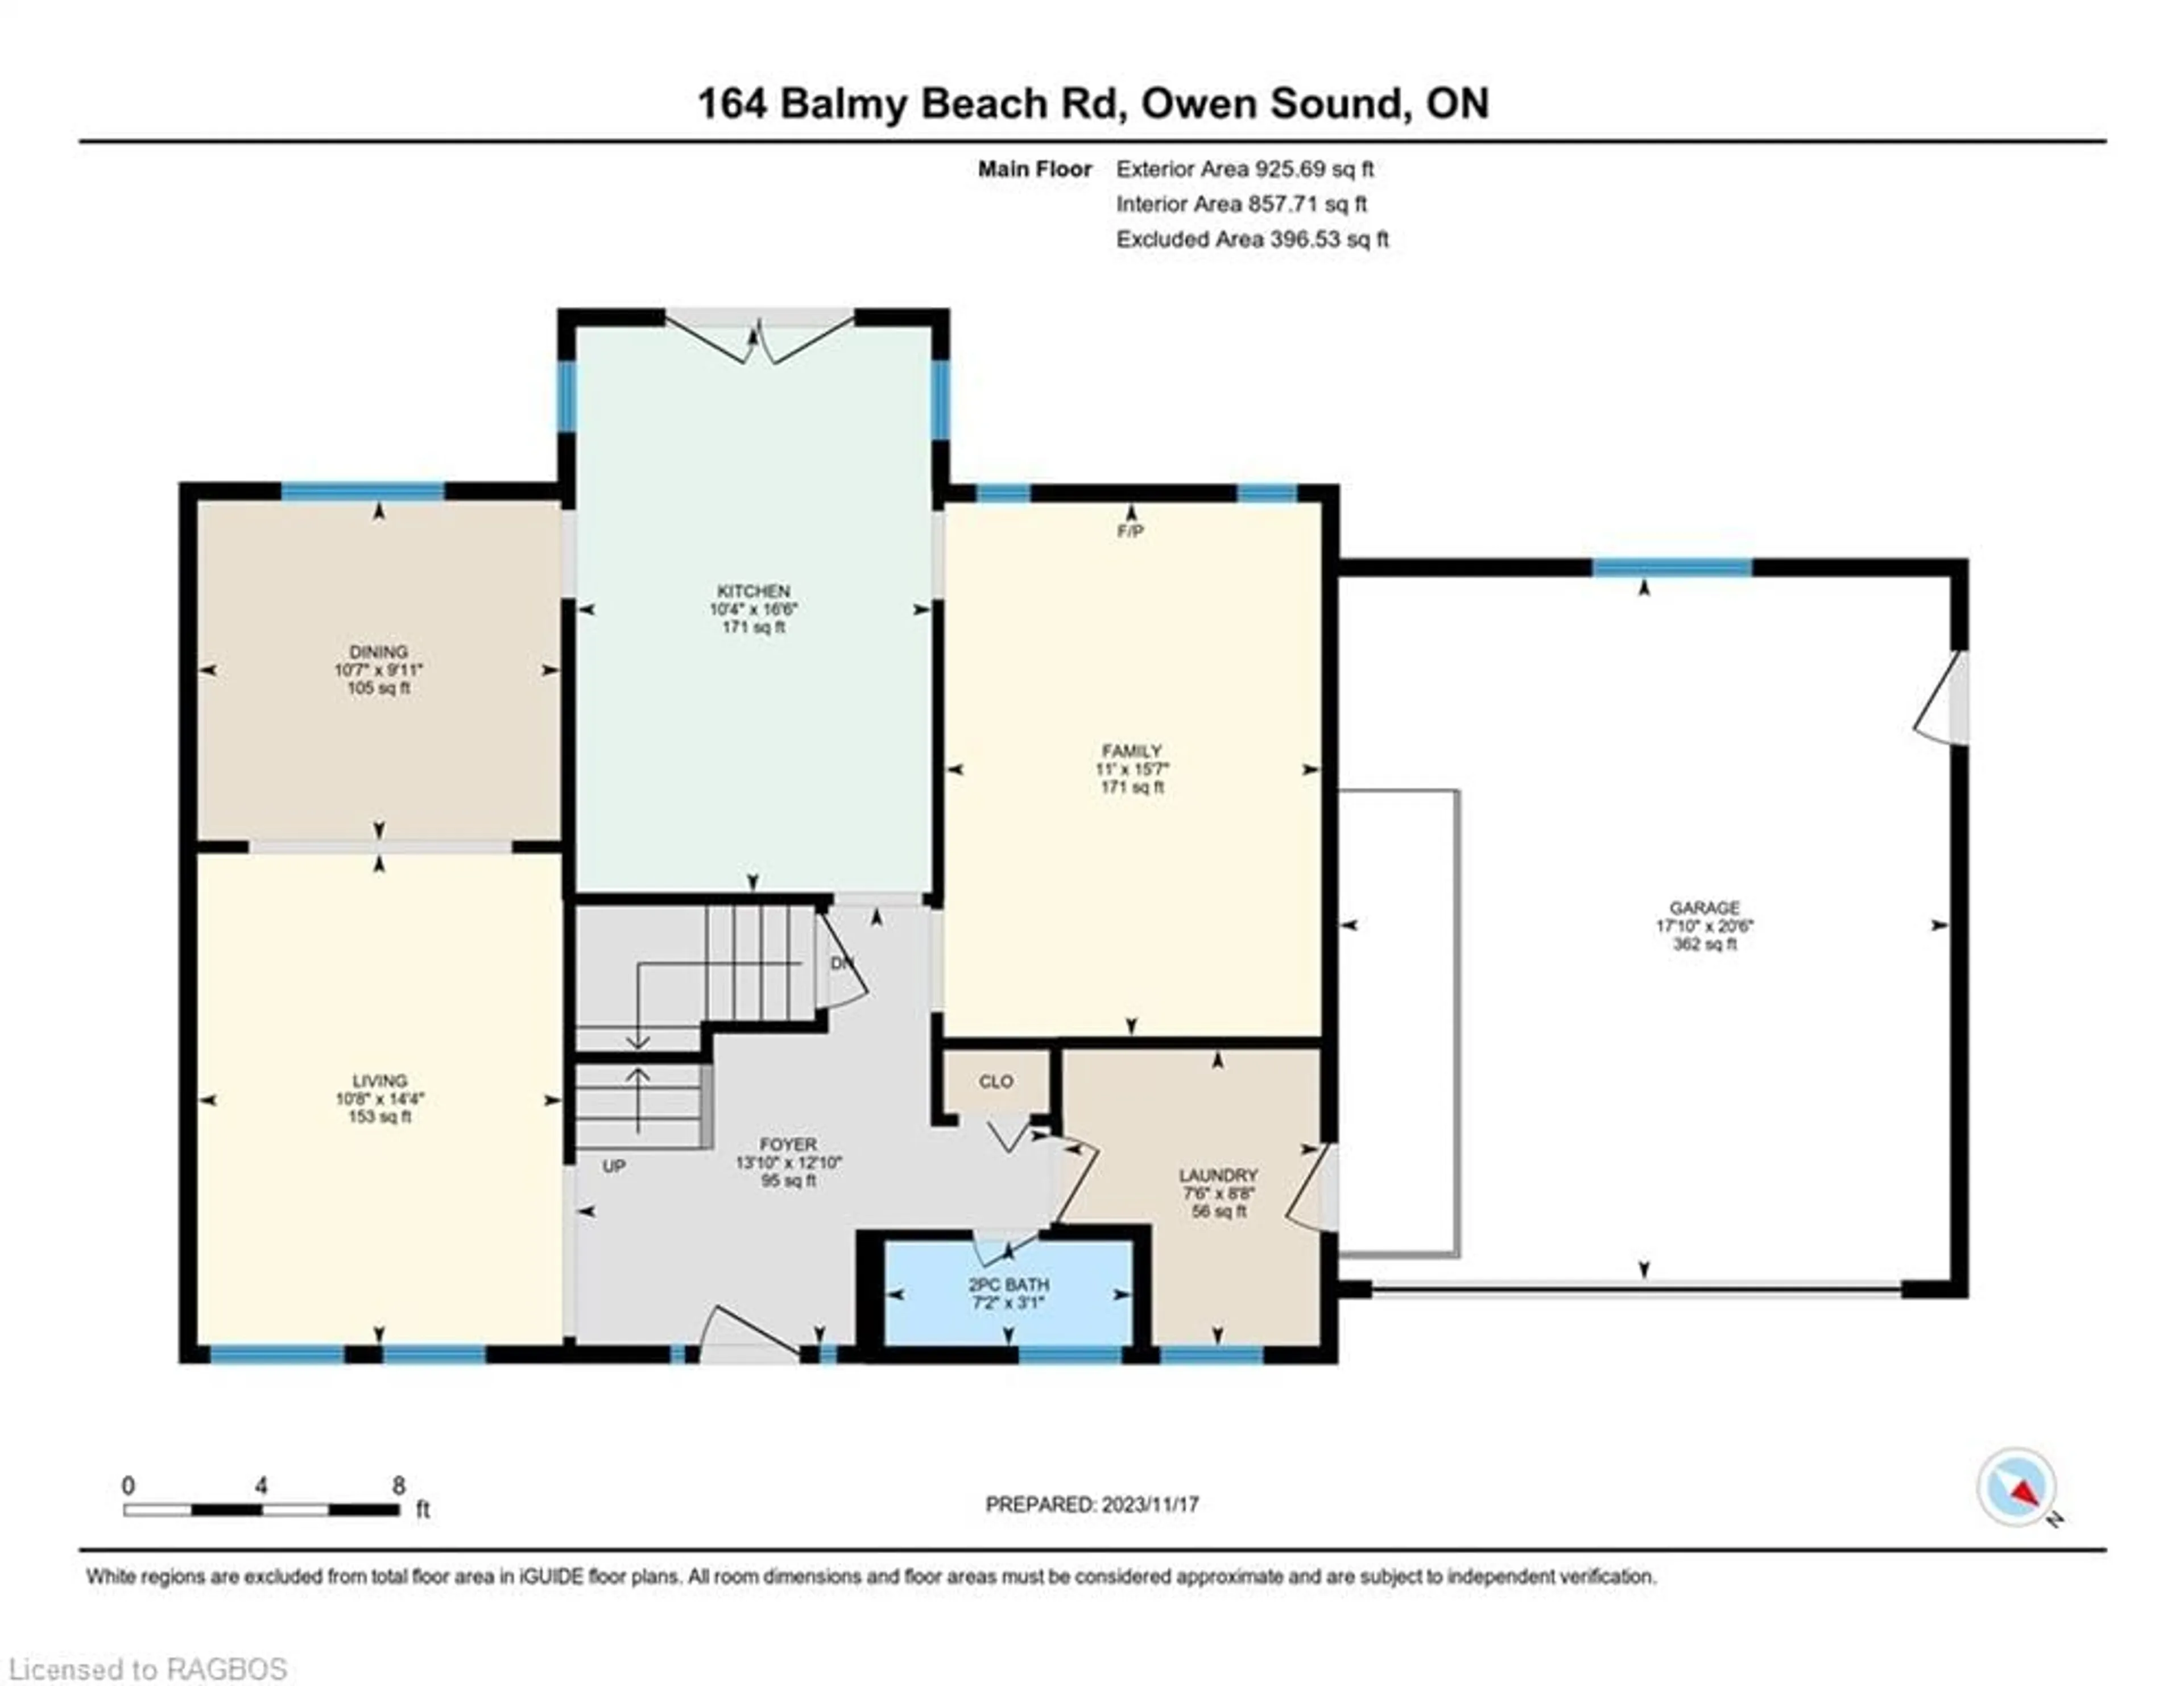 Floor plan for 164 Balmy Beach Rd, Georgian Bluffs Ontario N4K 5N4